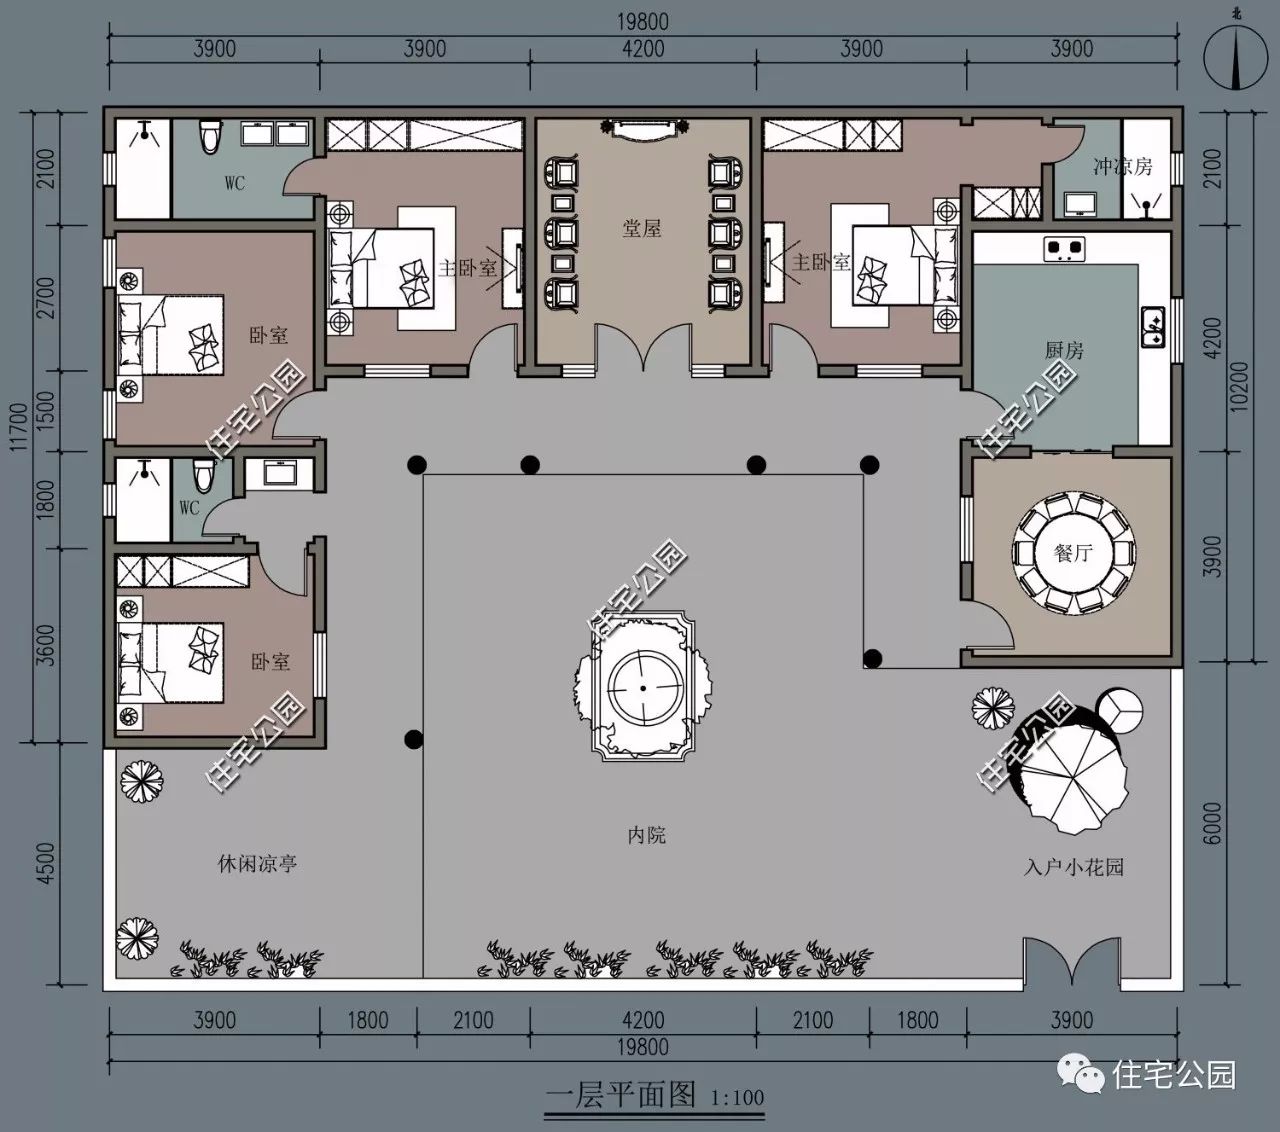 质朴经典的居住方式,12x20米有堂屋的三合院(全图 视频展示)